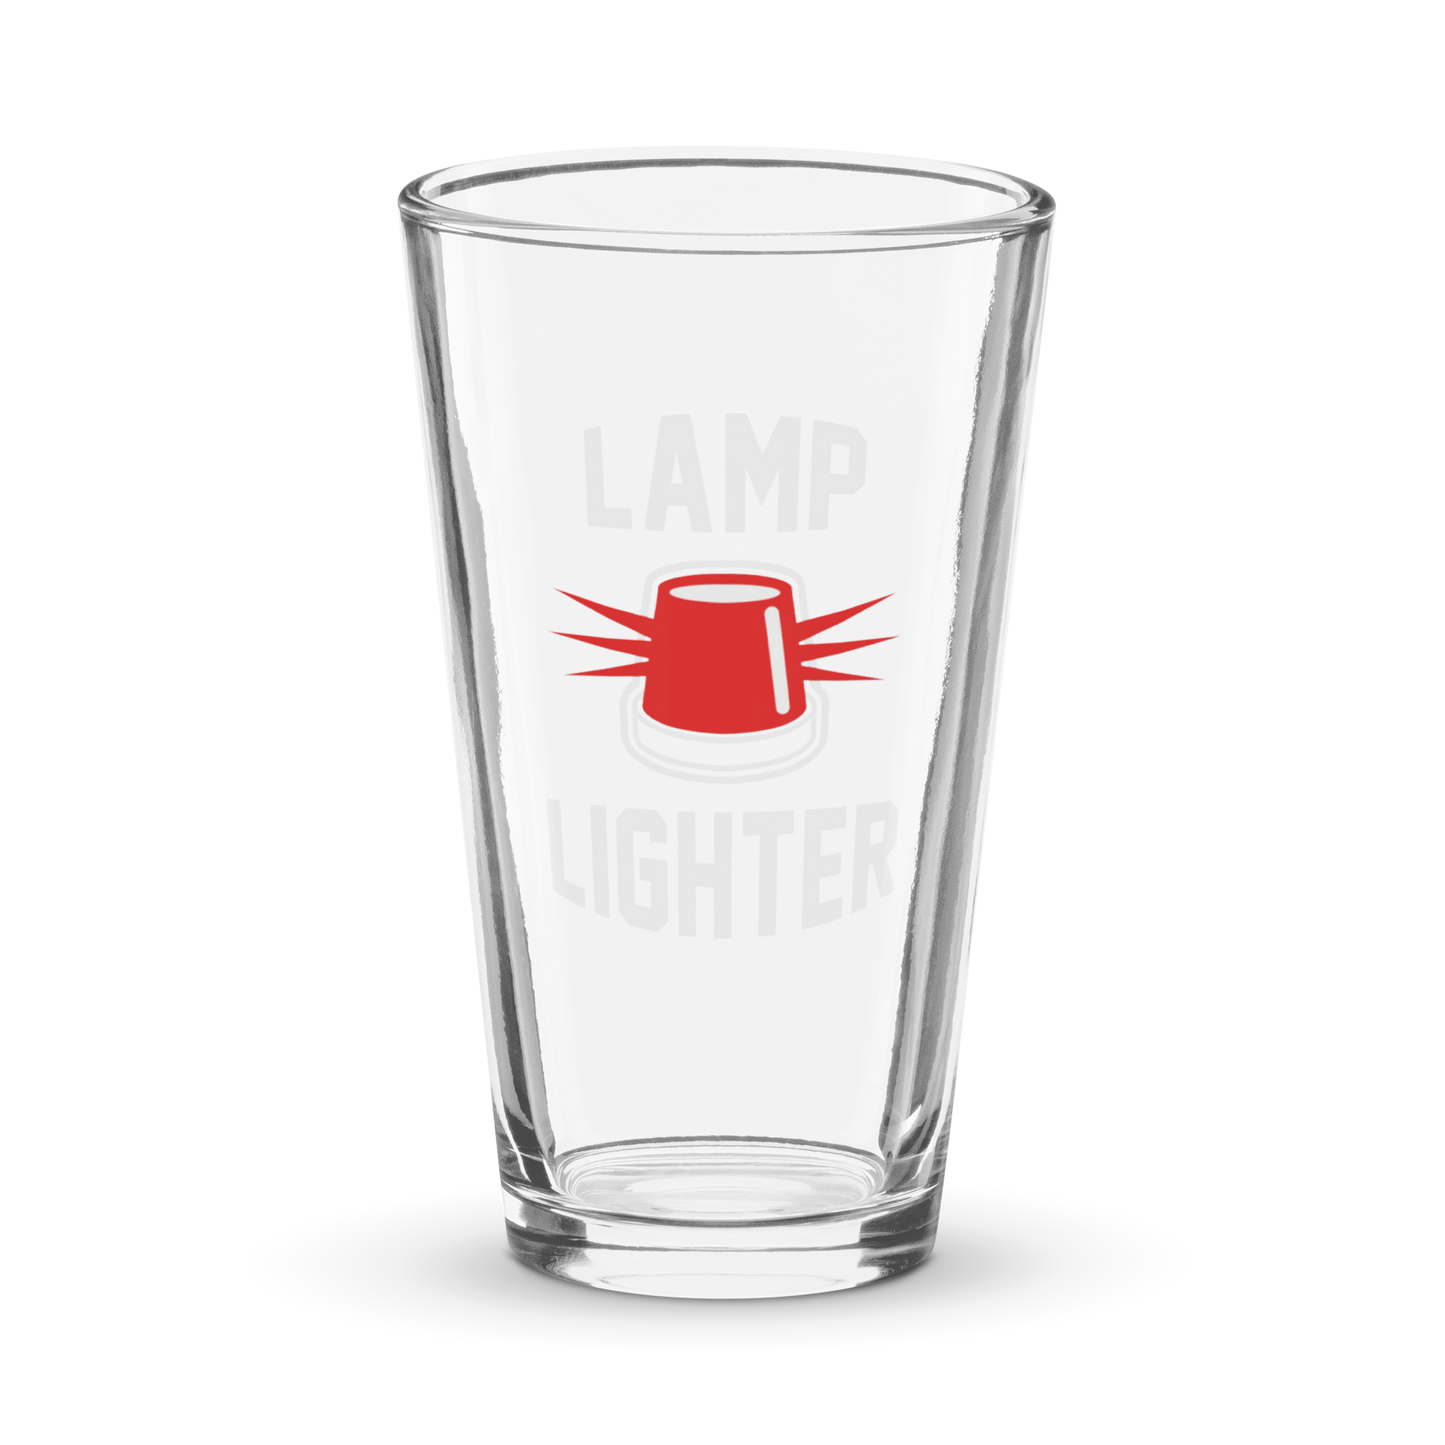 Lamp Lighter Pint